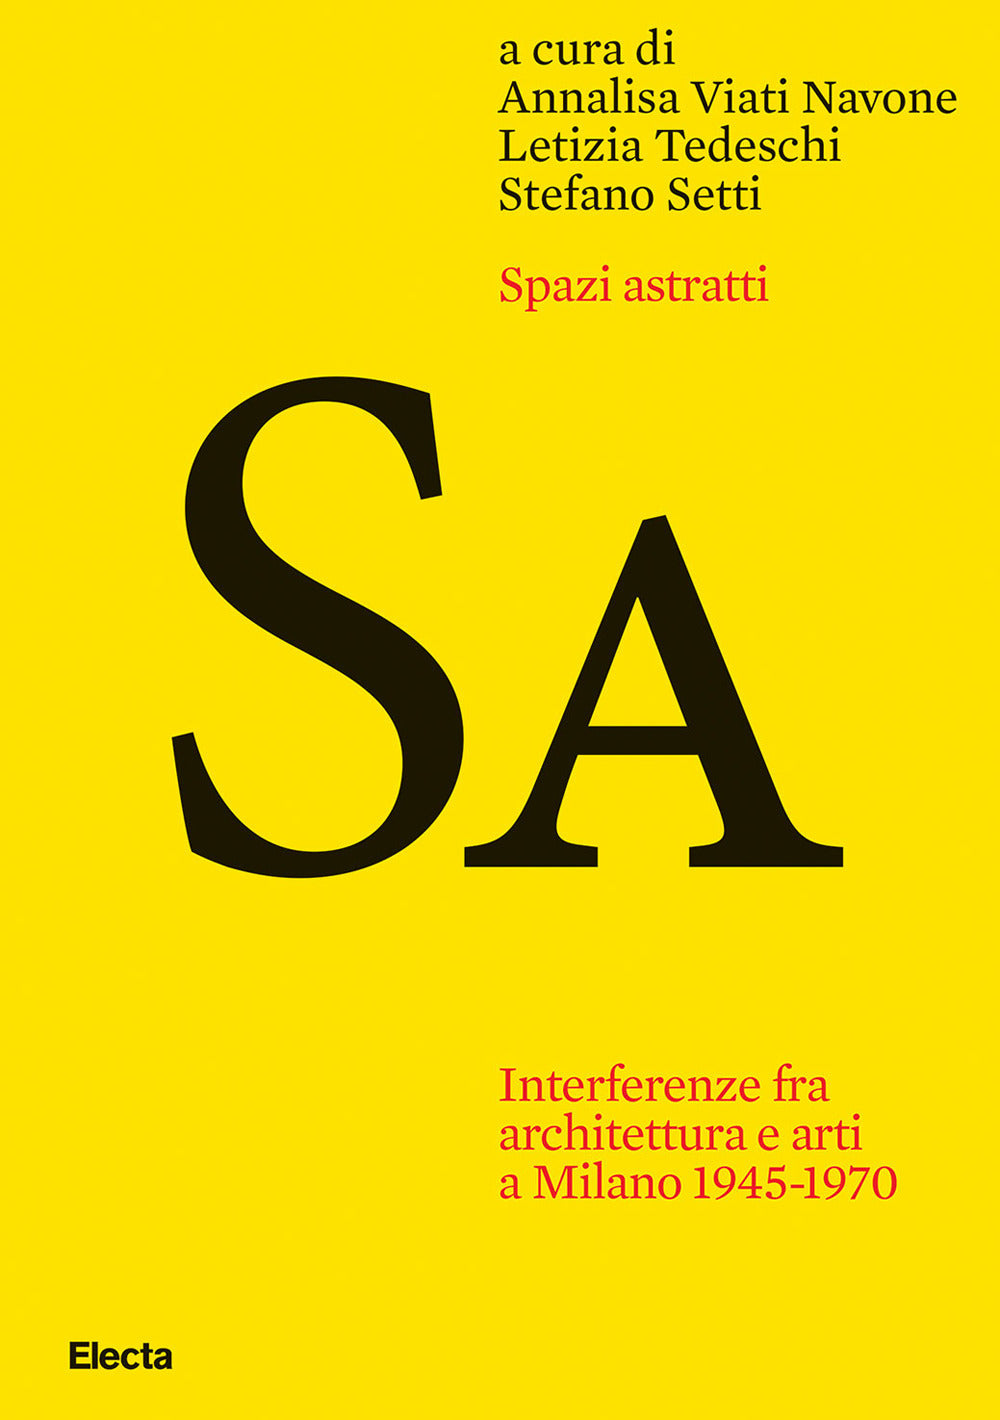 Spazi astratti. Interferenze fra architettura e arti a Milano 1945-1970